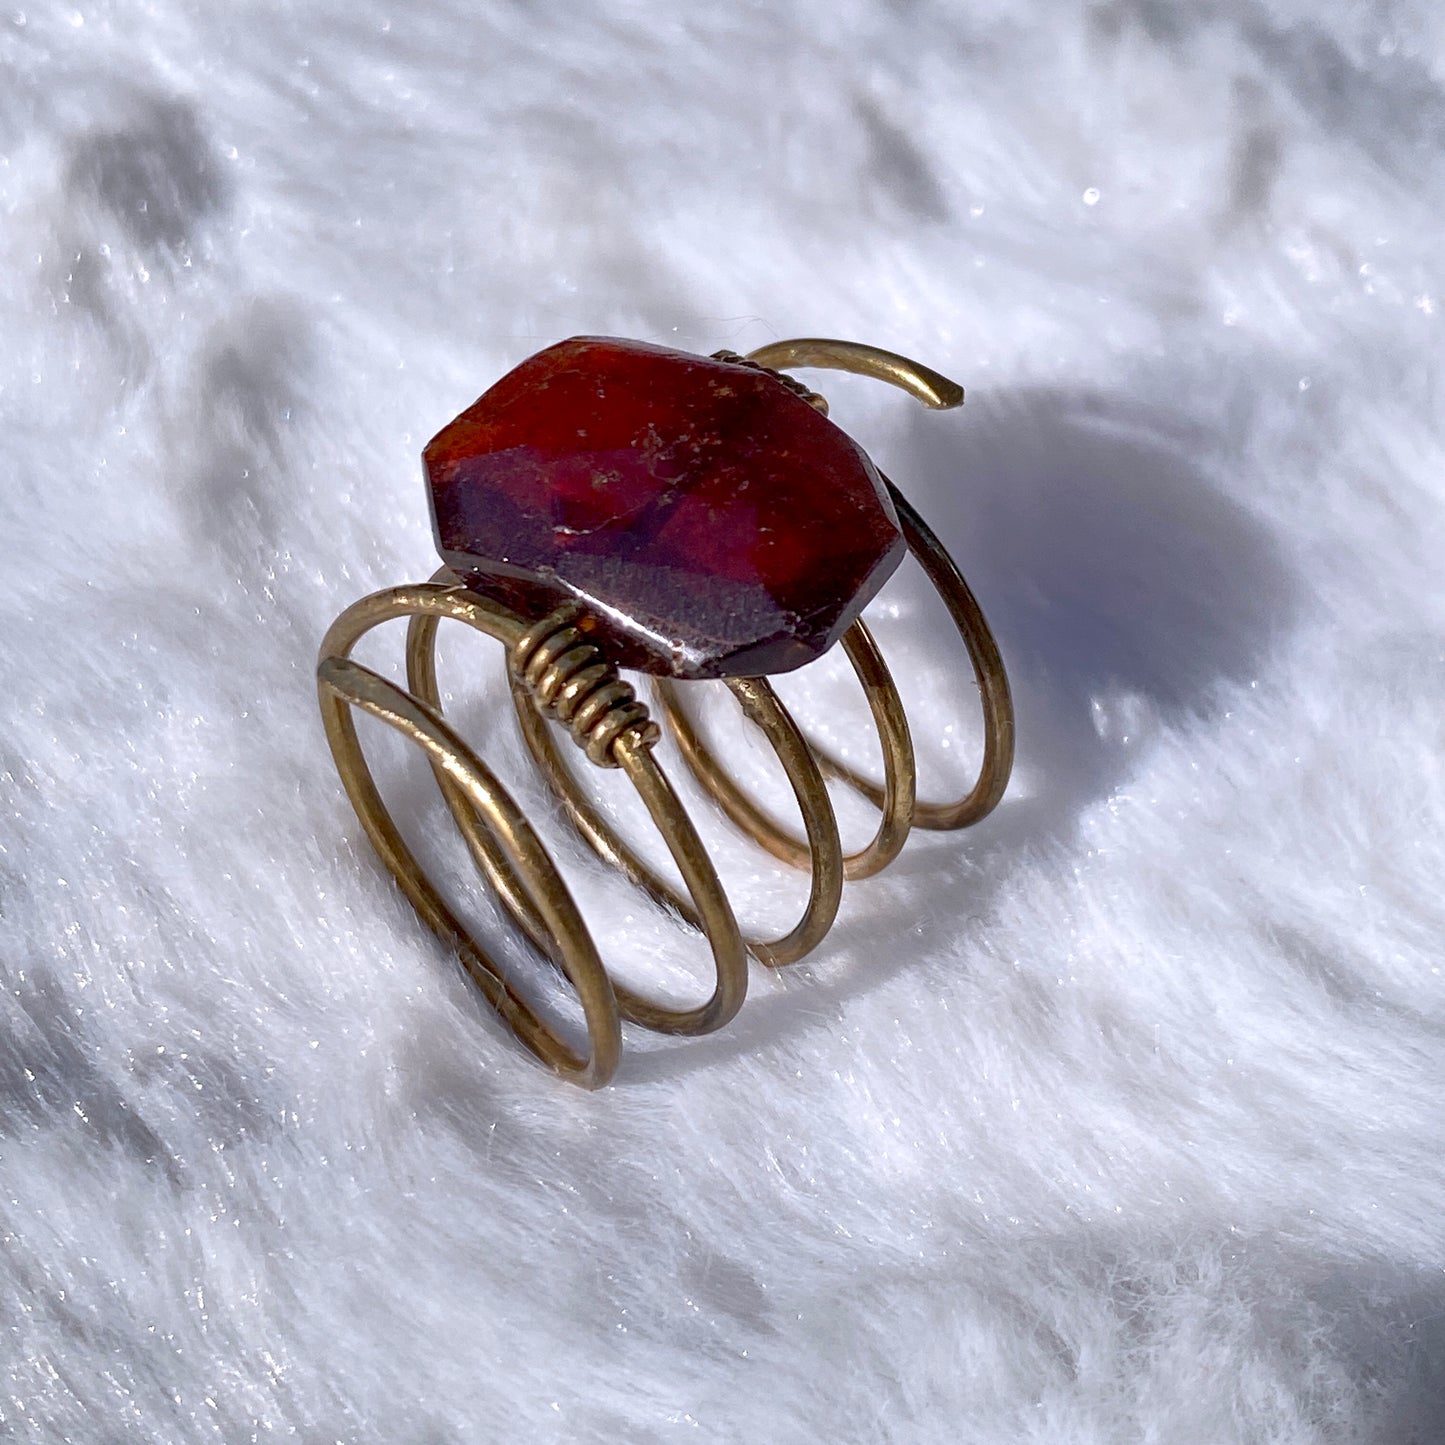 Hand hammered Brass wire ring with garnet birthstone